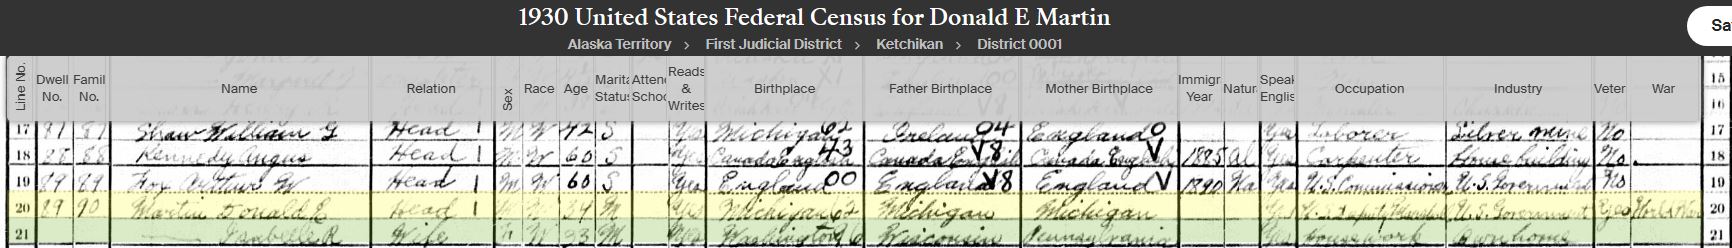 Capture1930 Census